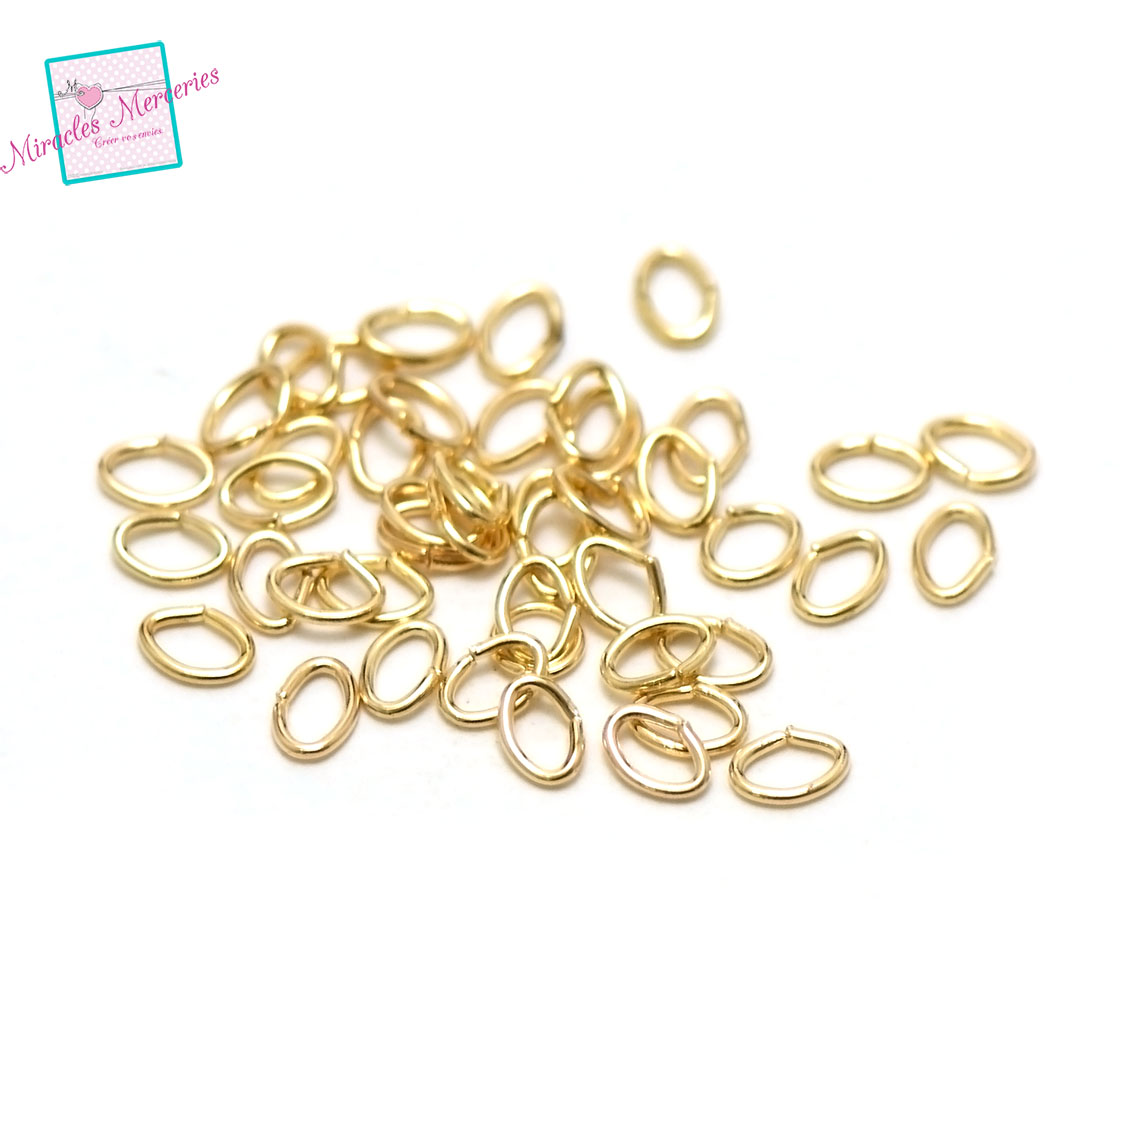 100 anneaux brisés oval 5x4 mm, doré